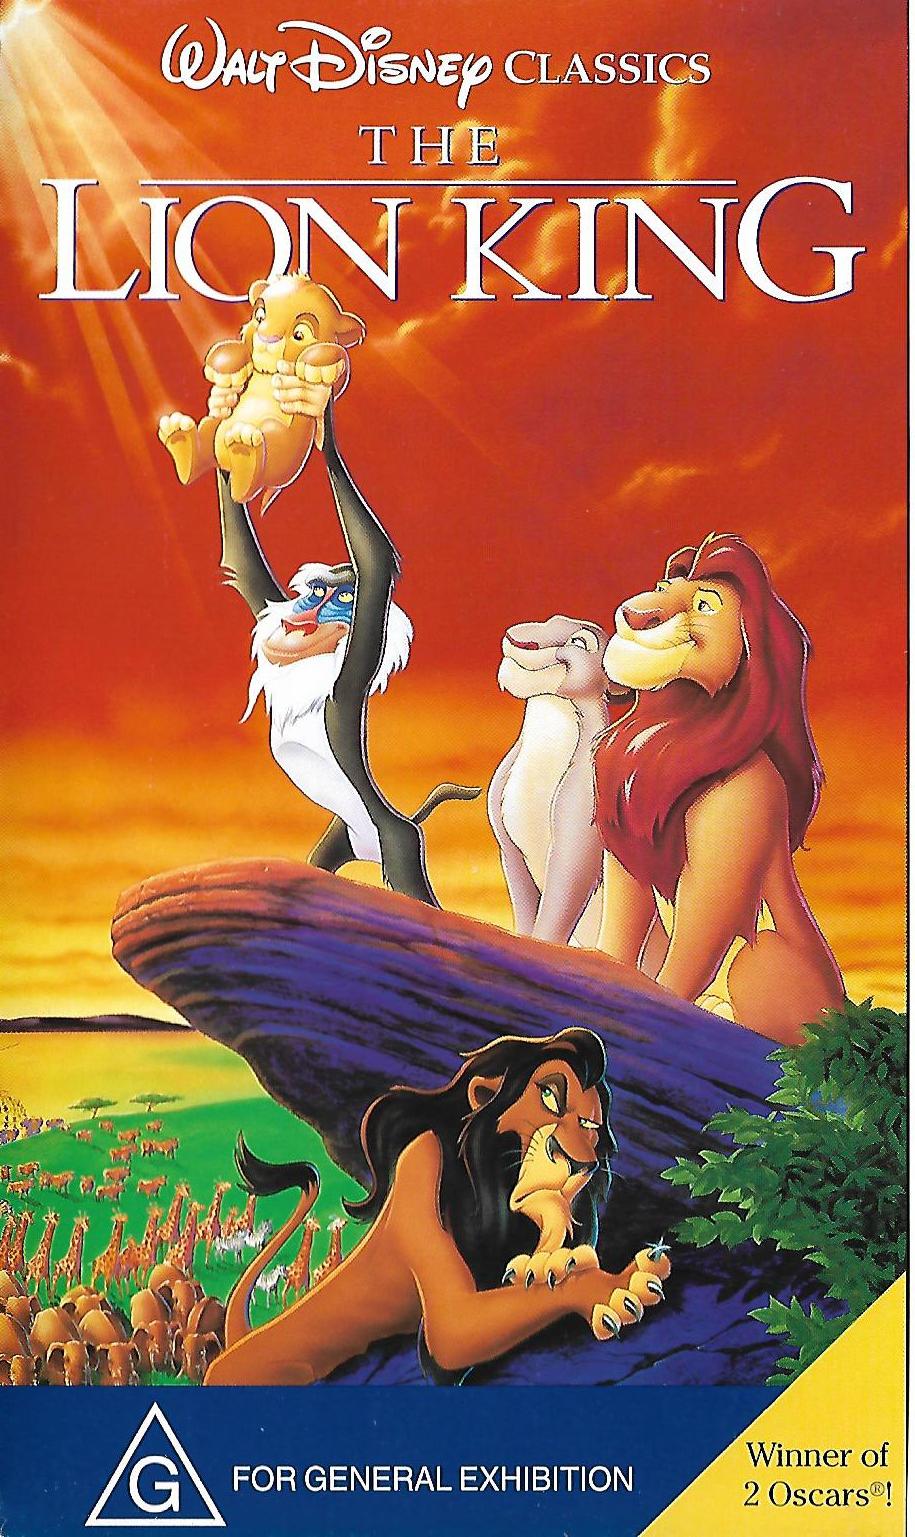 The lion king | Disney vhs openings Wiki | Fandom